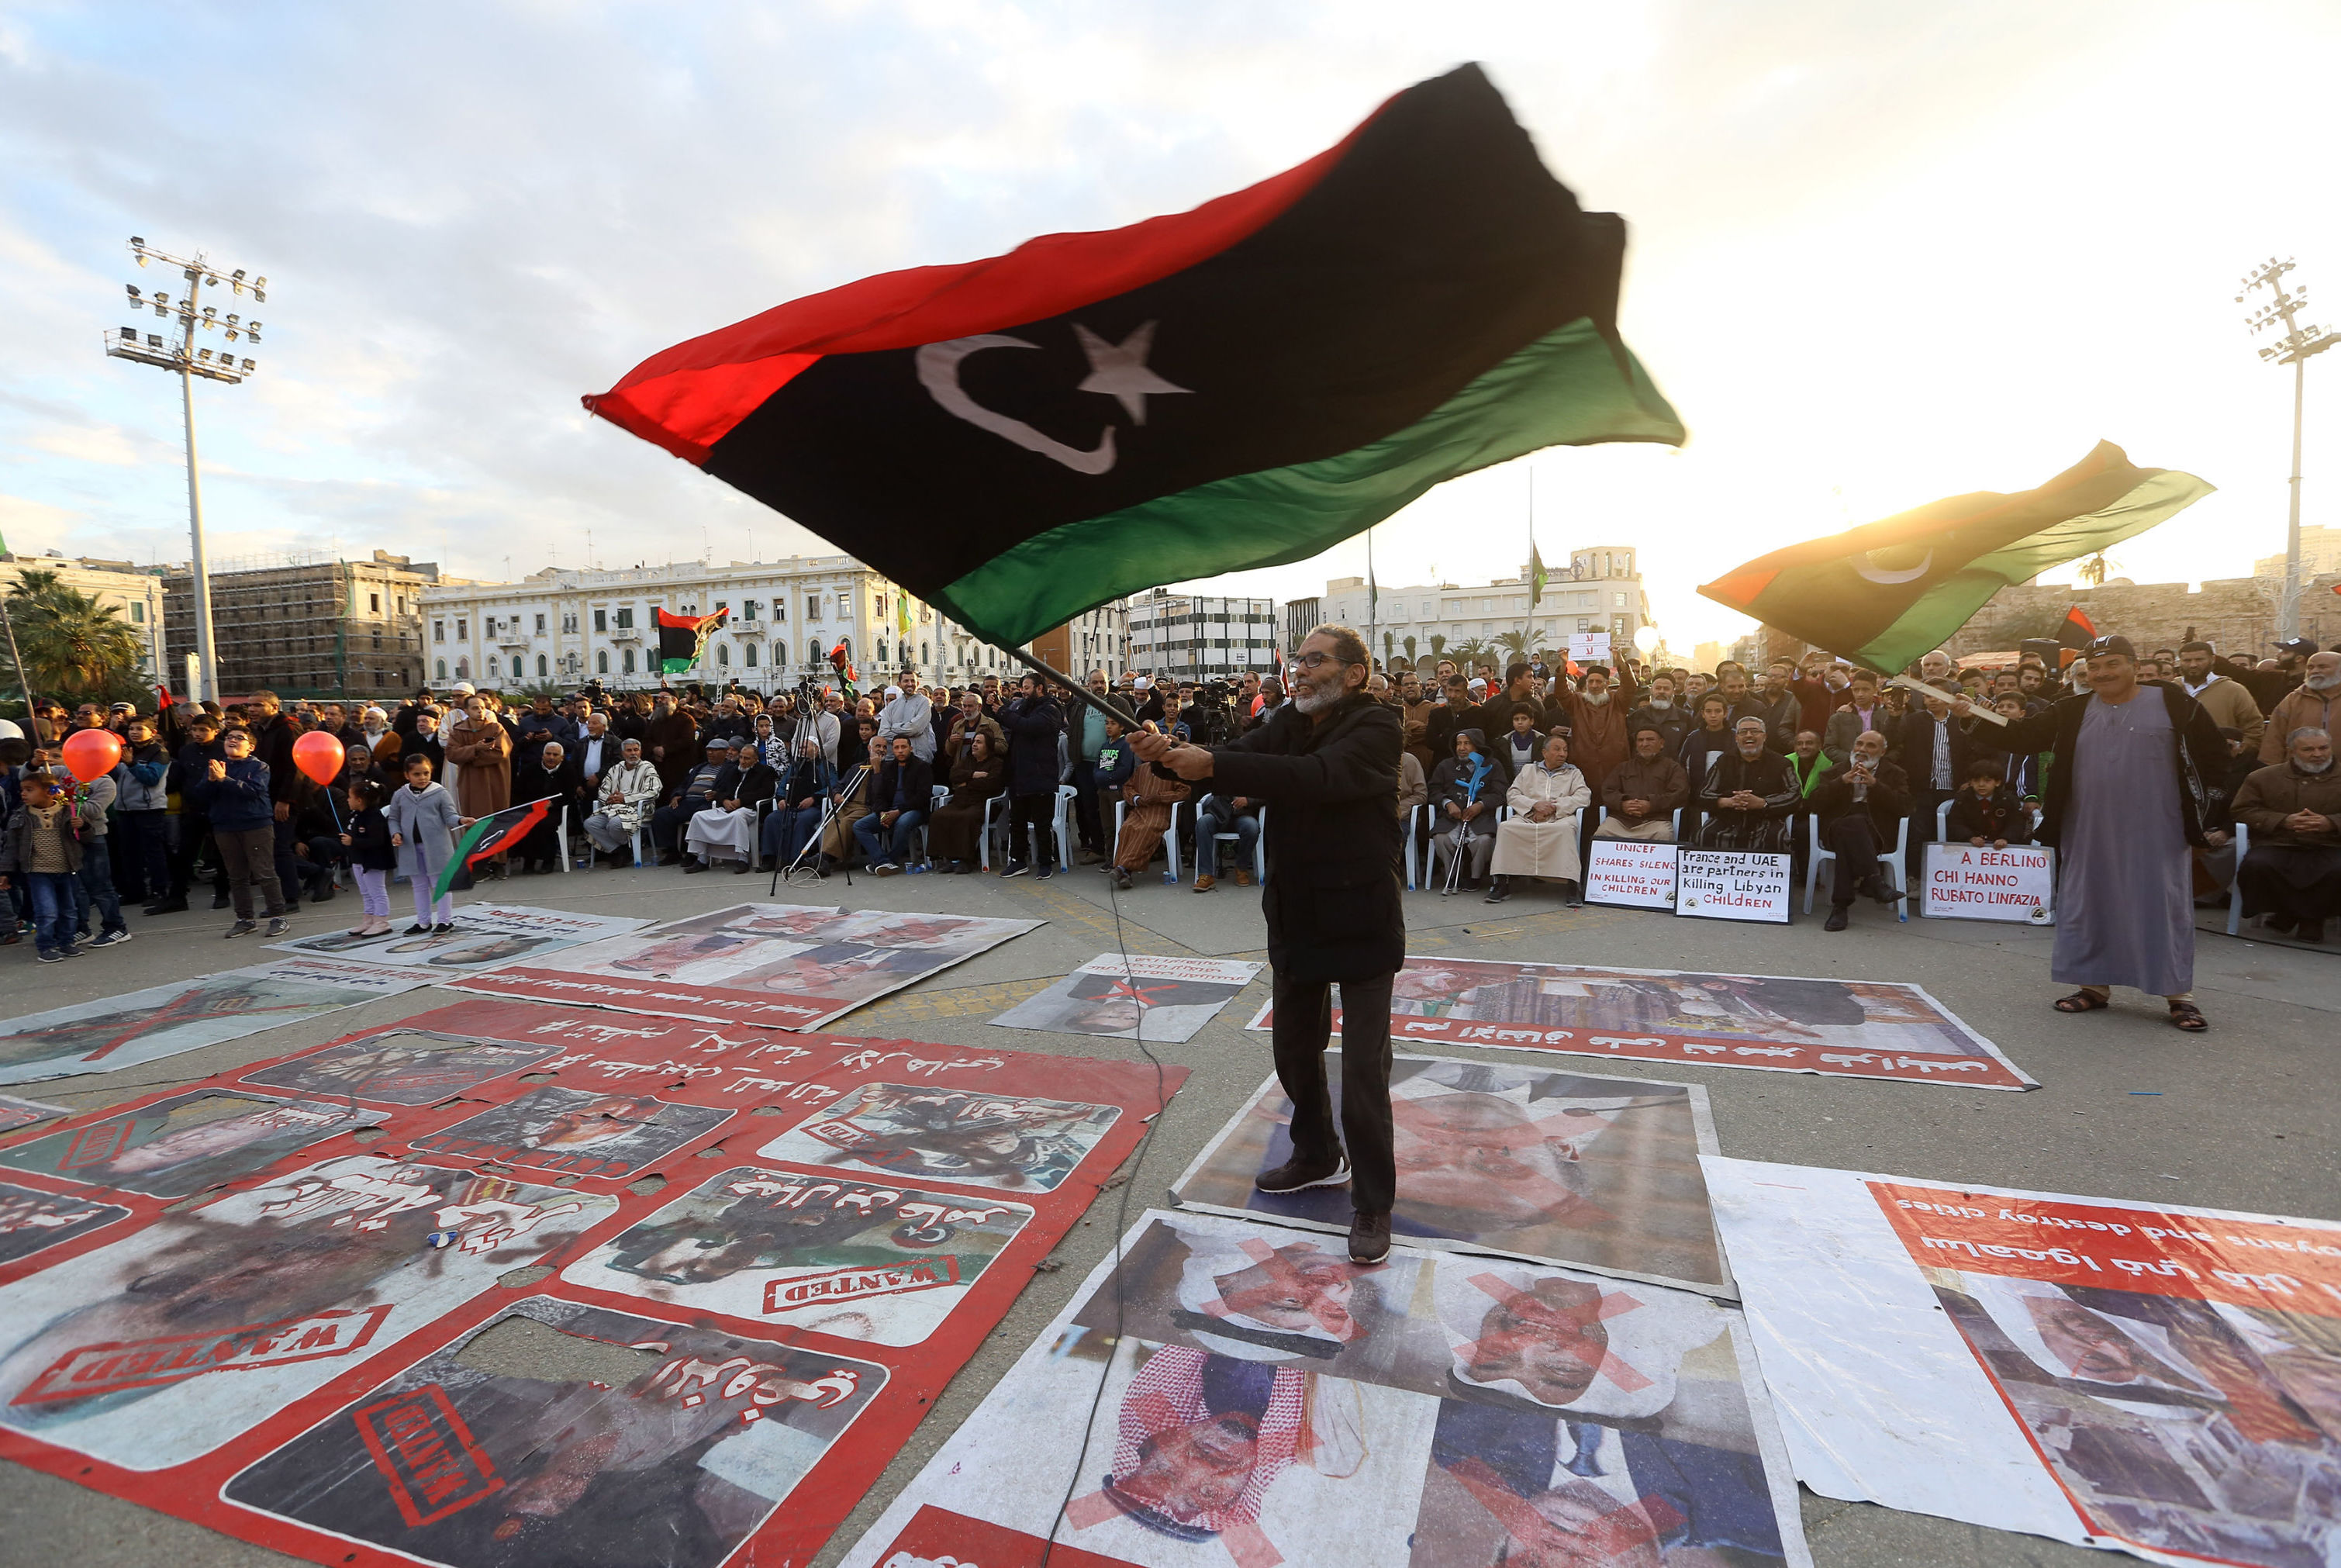 Демонстранты на митинге против восточного ливийского лидера Халифы Хафтара и в поддержку признанного ООН правительства национального согласия на площади Мучеников в Триполи, Ливия, 10 января 2020 года